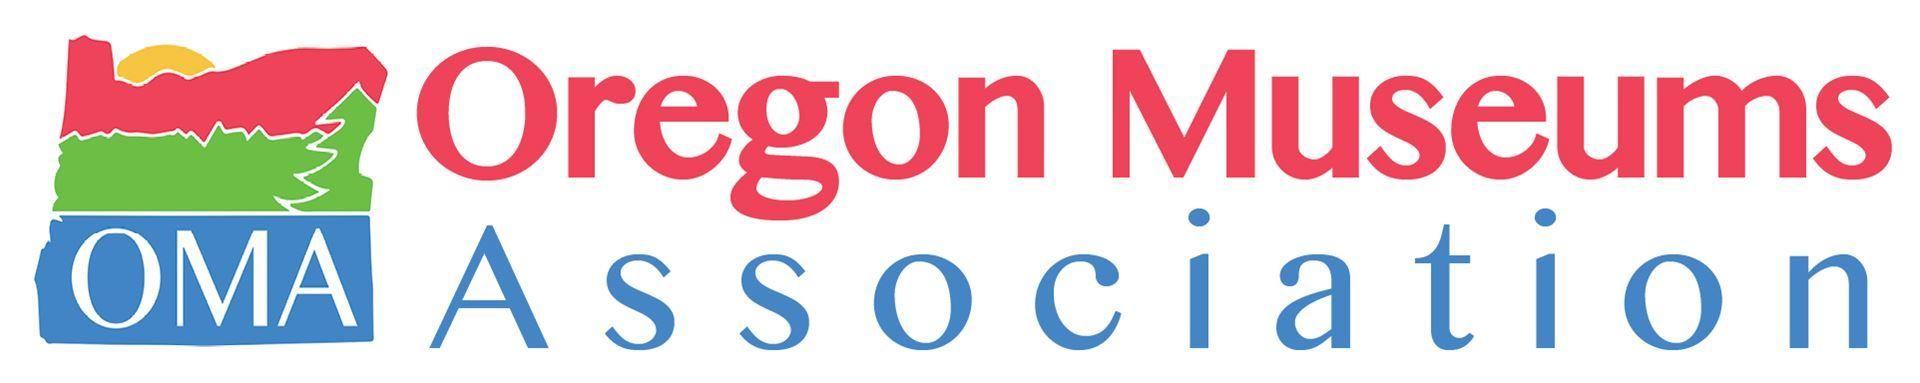 Oma Logo - Oregon Museums Association - Home